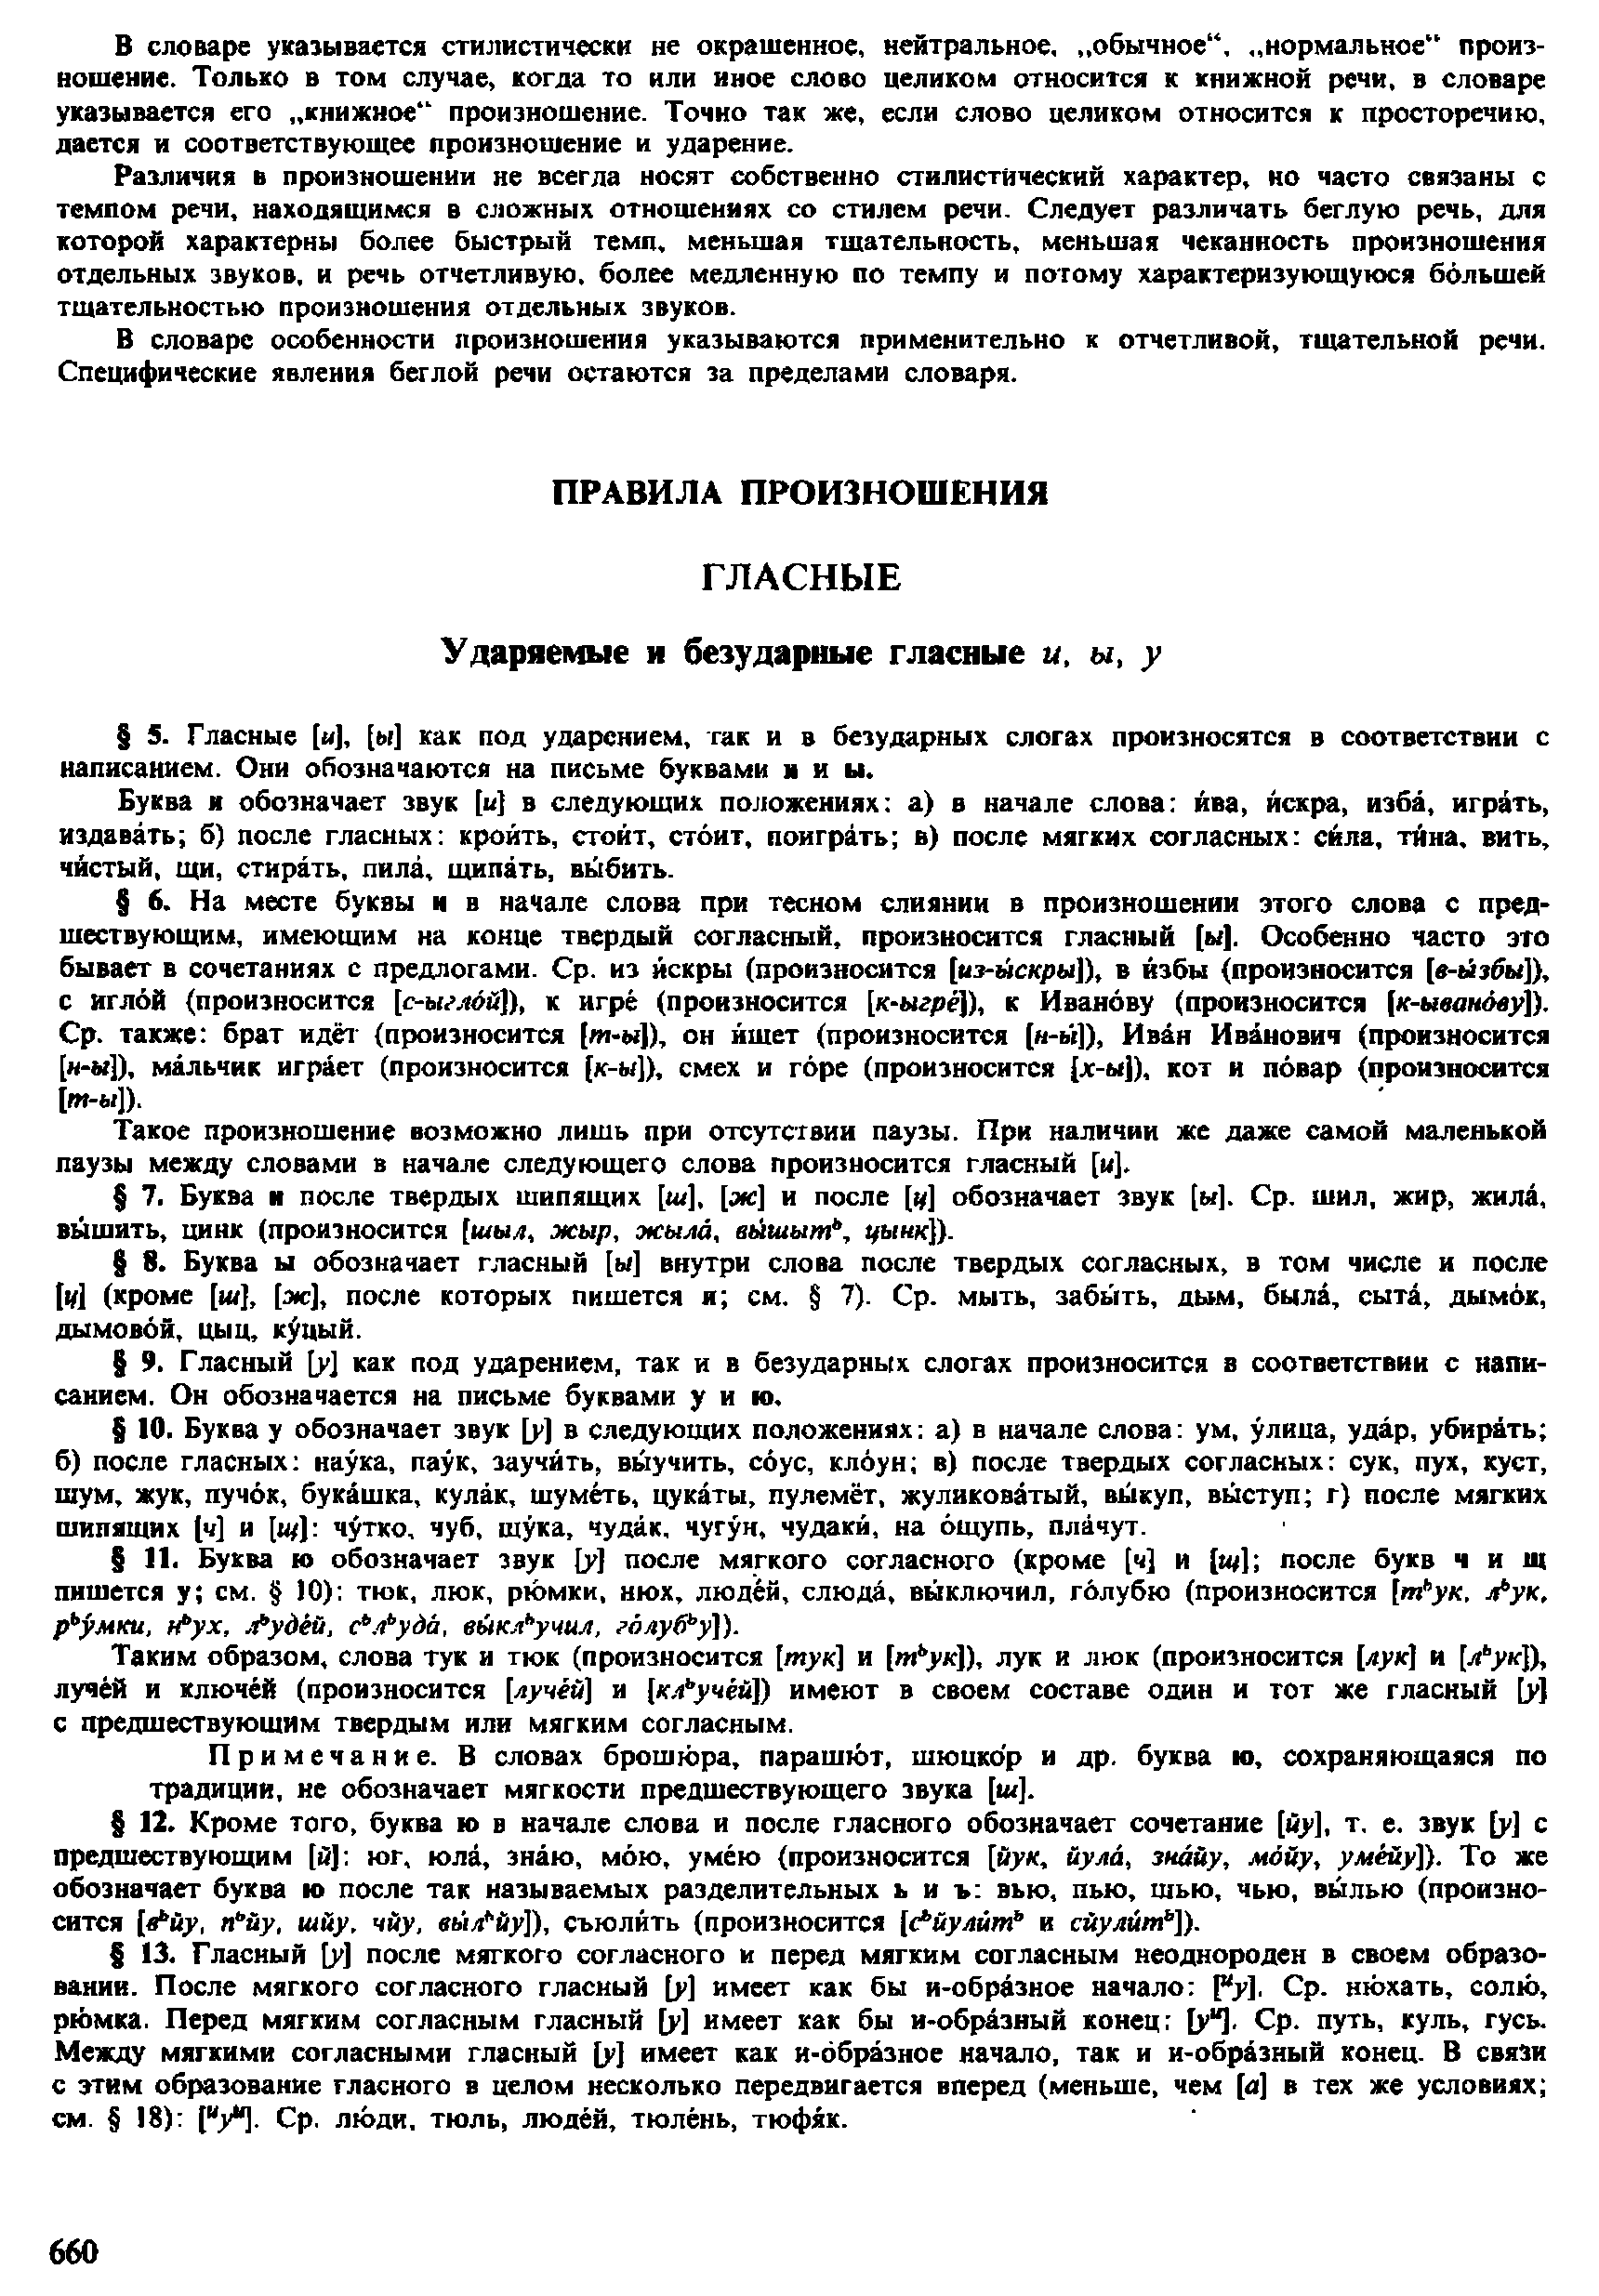 Фотокопия pdf / скан страницы 658 орфоэпического словаря под редакцией Аванесова (4 издание, 1988 год)